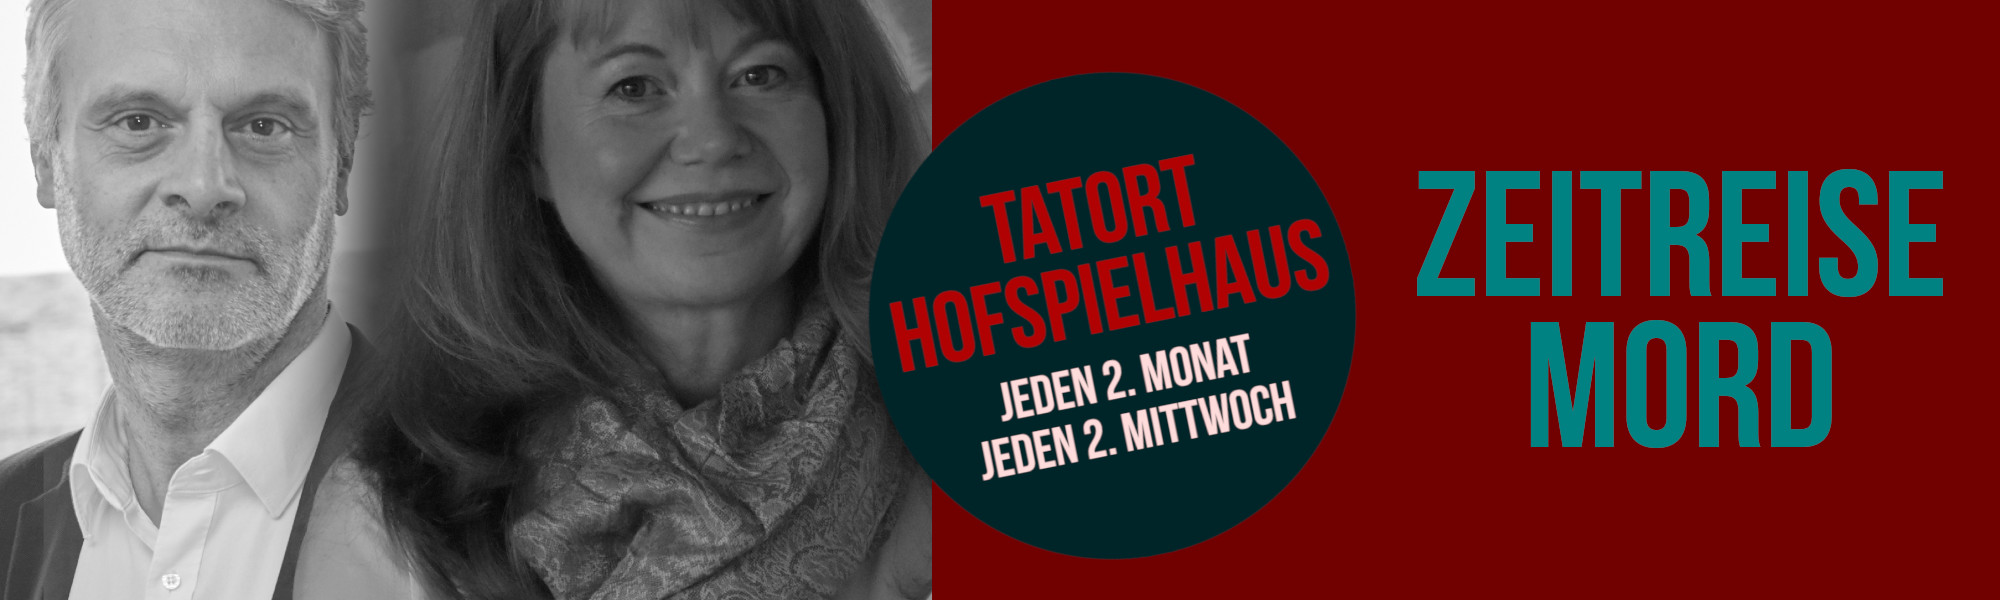 Tatort Hofspielhaus – Zeitreise Mord